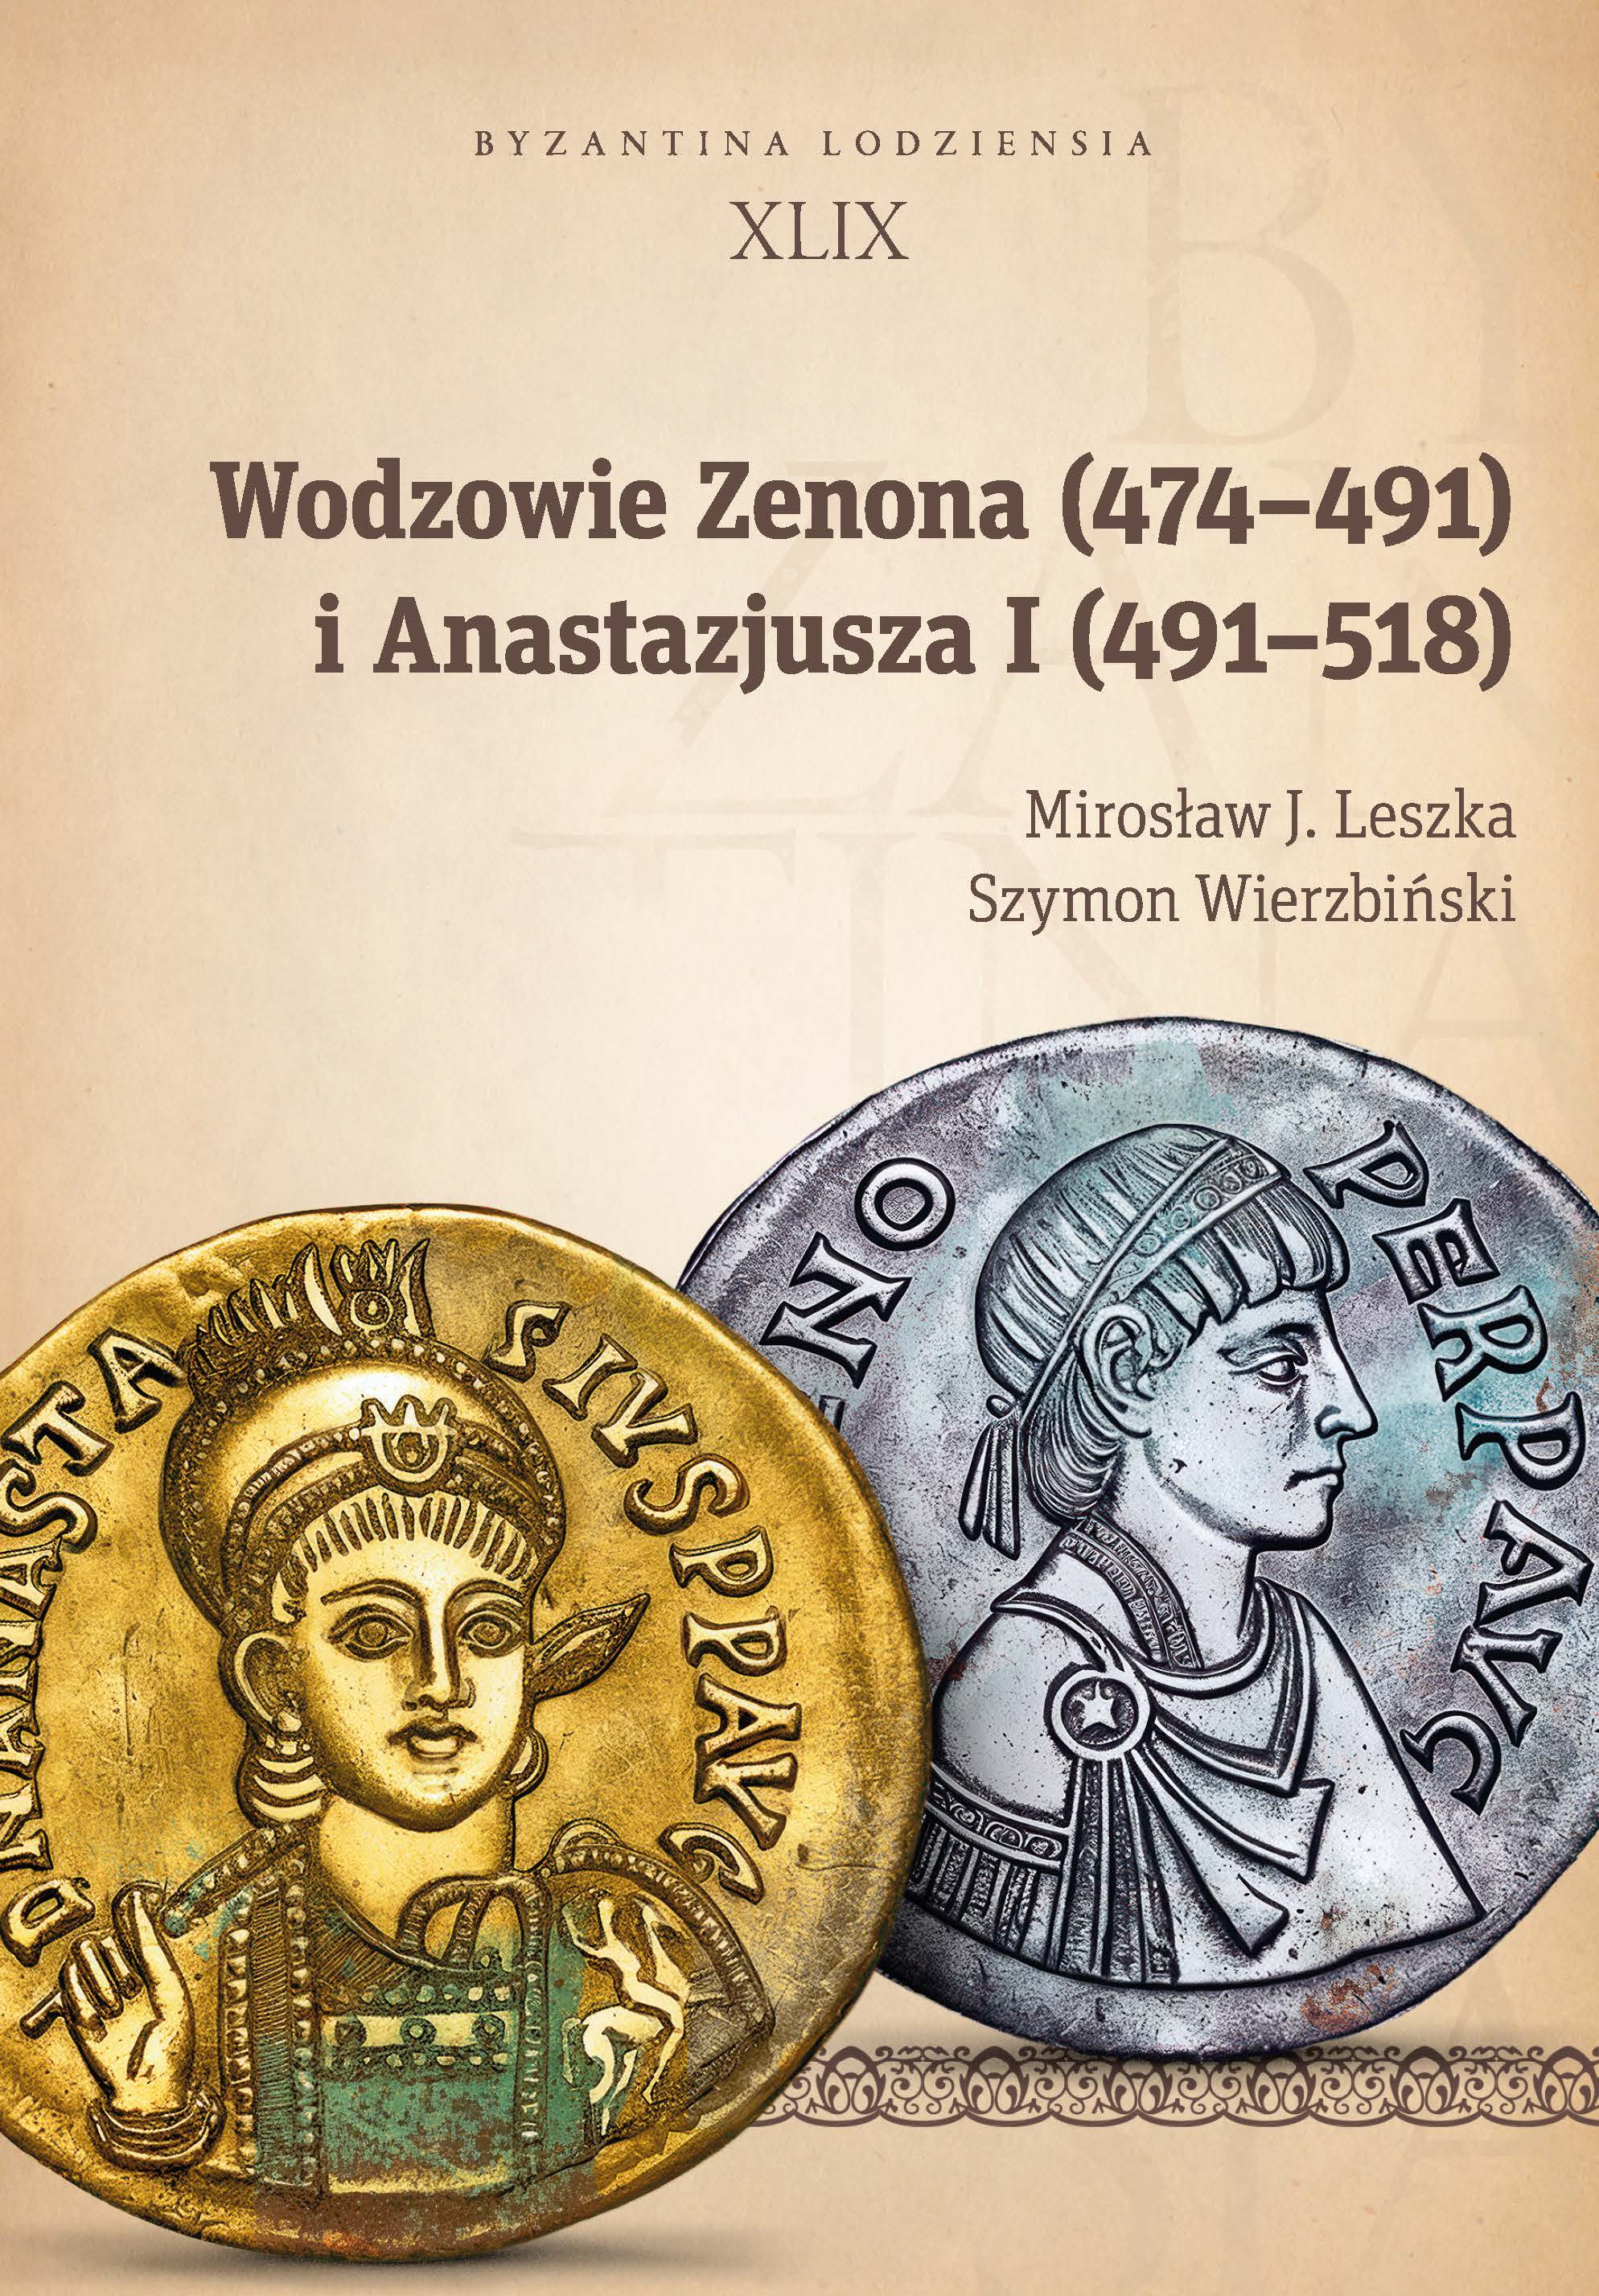 Commanders of Zeno (474-491) and Anastasius (491-518)